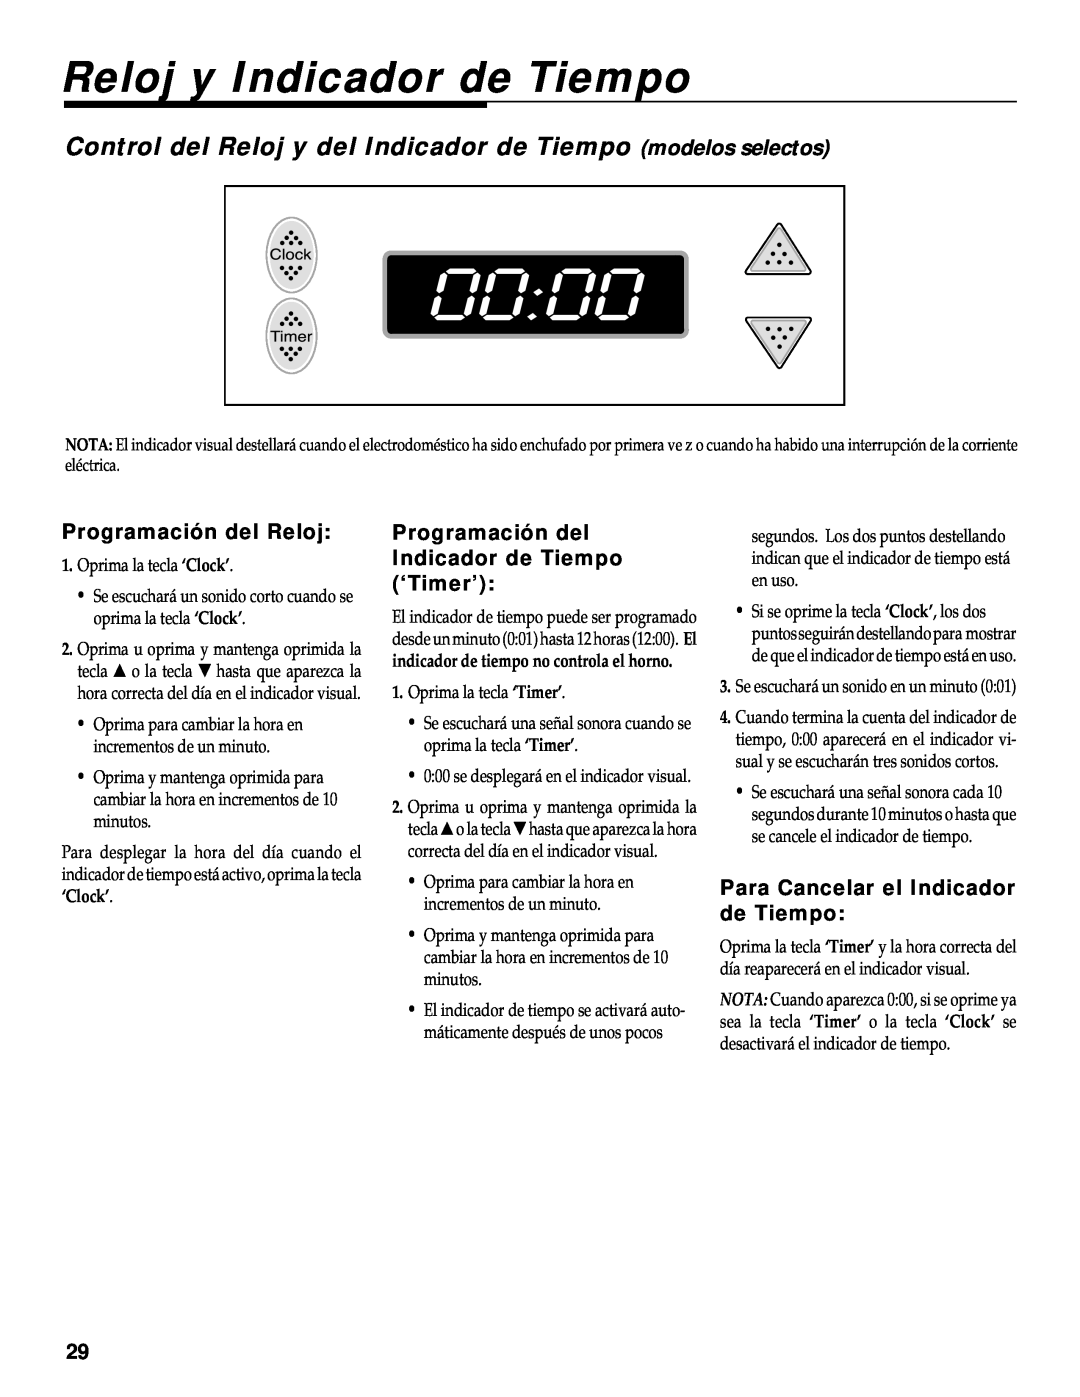 Maytag WT-TOD warranty Reloj y Indicador de Tiempo, Control del Reloj y del Indicador de Tiempo modelos selectos 